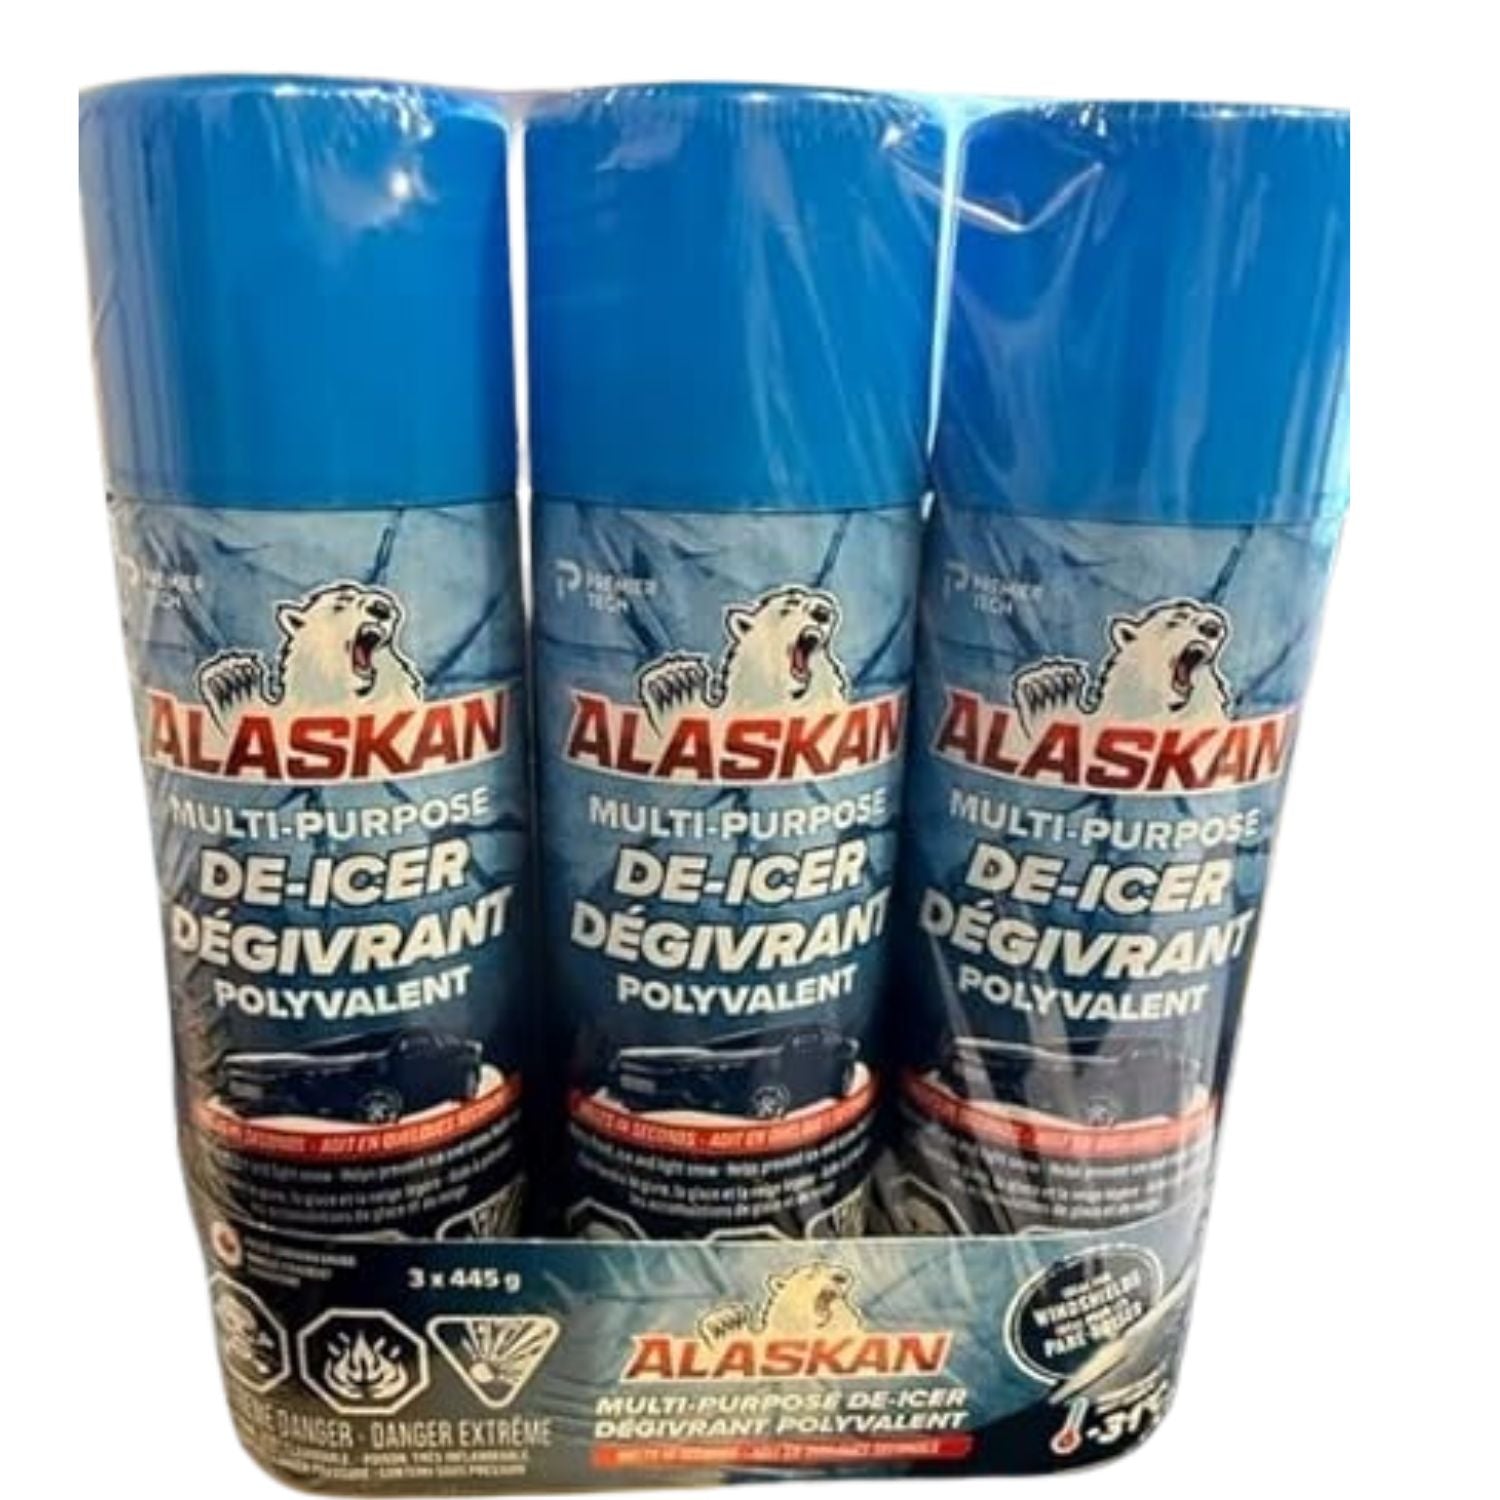 Alaskan dégivreur de pare-brise 3X445g